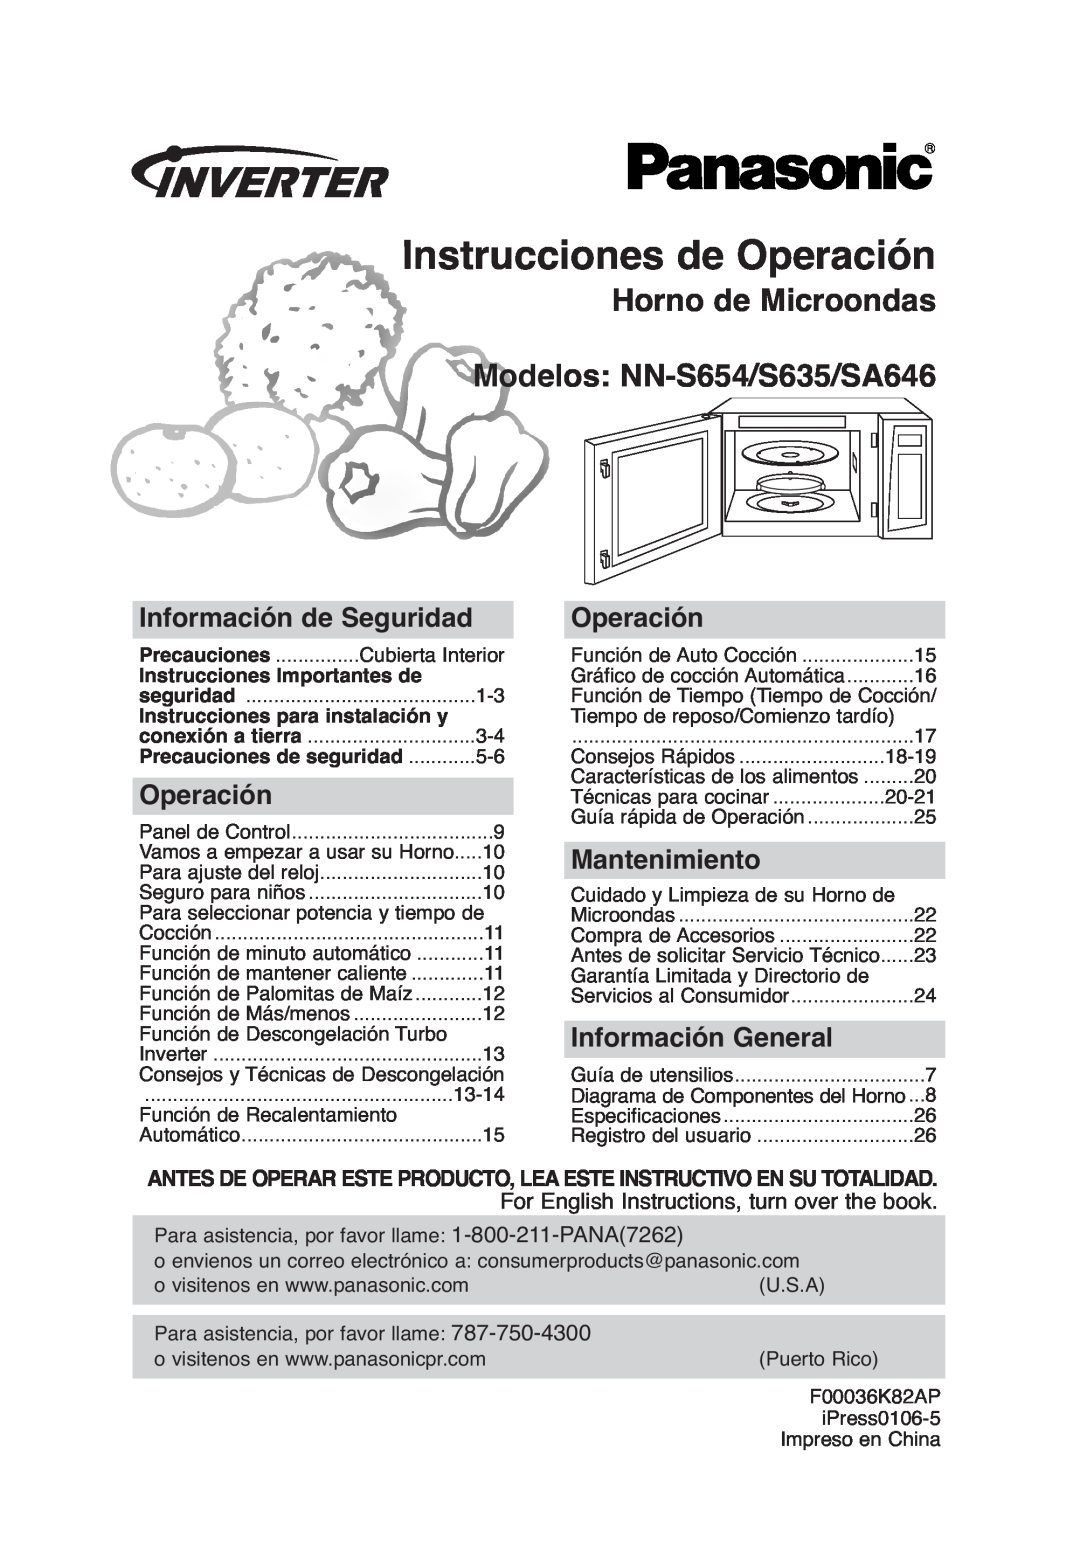 Panasonic NN-SA646 Instrucciones de Operación, Horno de Microondas Modelos NN-S654/S635/SA646, Información de Seguridad 